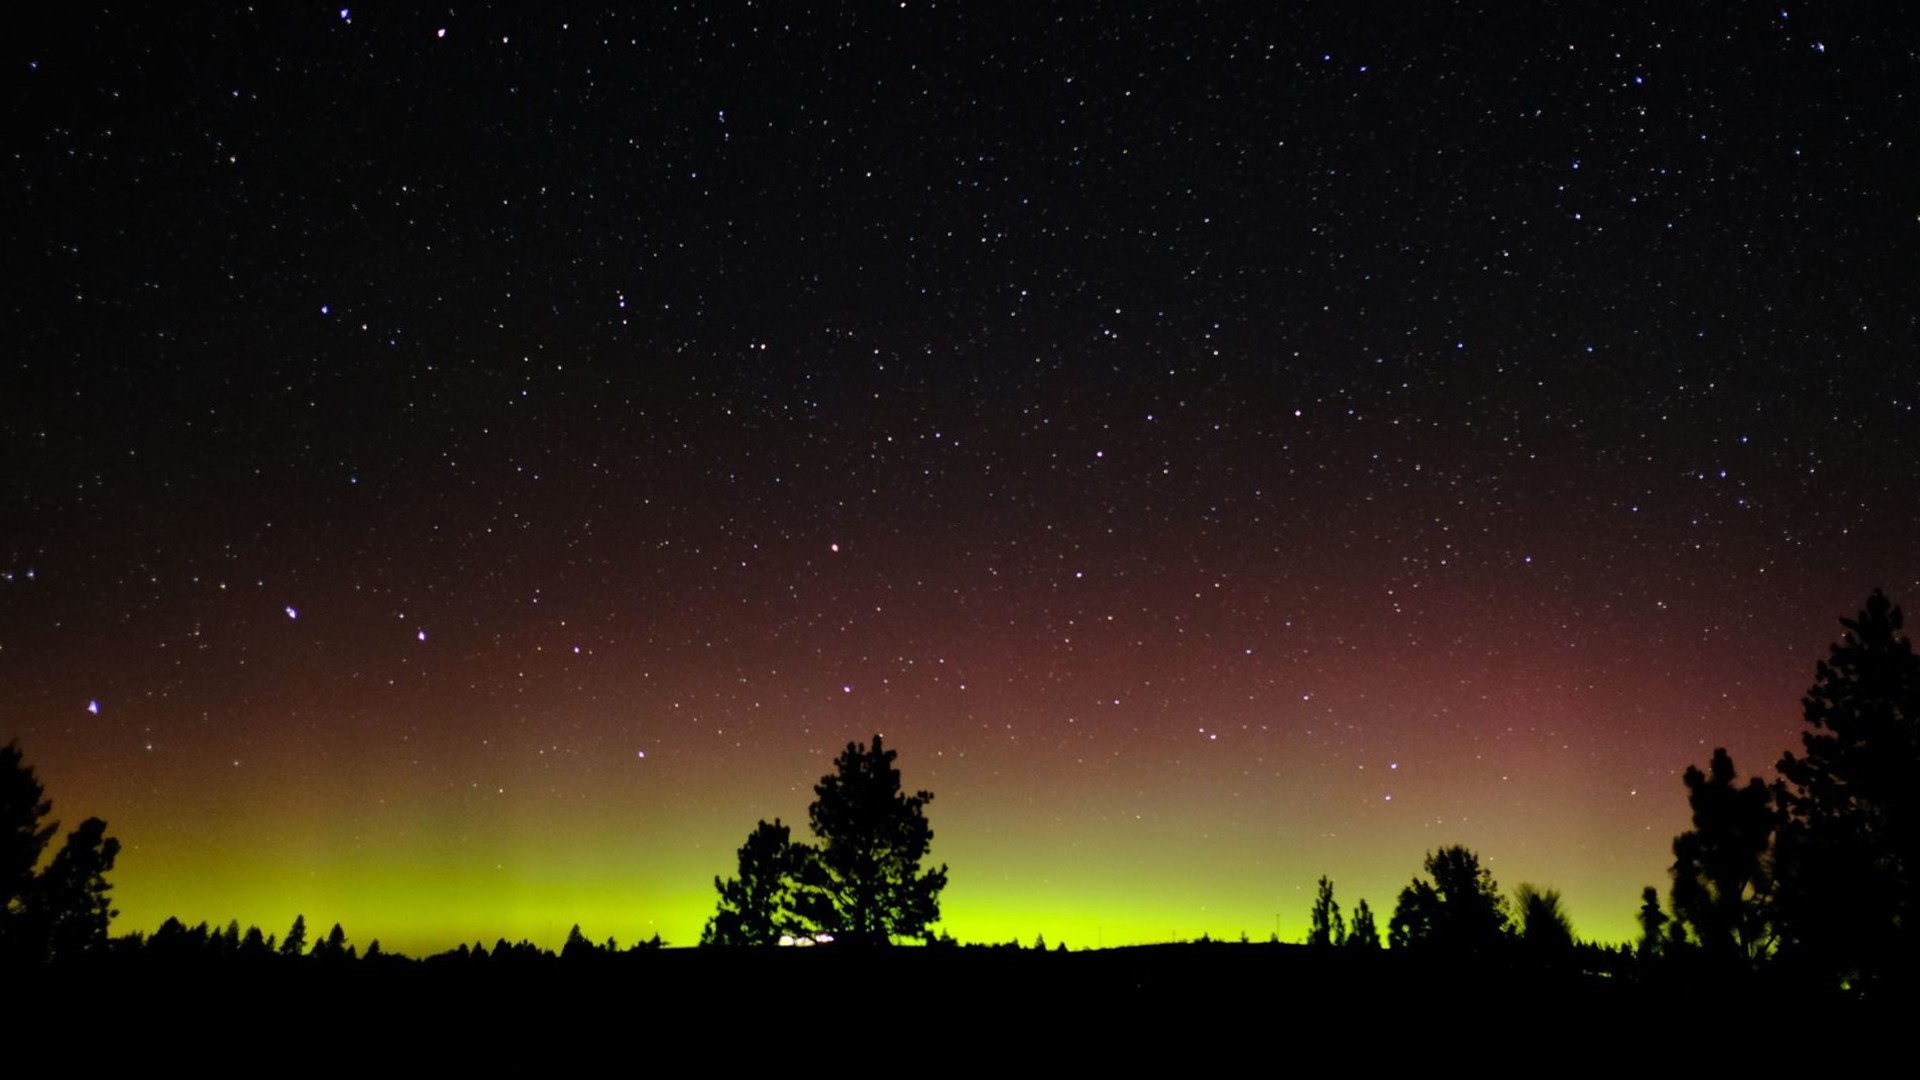 Northern Lights may be visible over Oregon, Washington